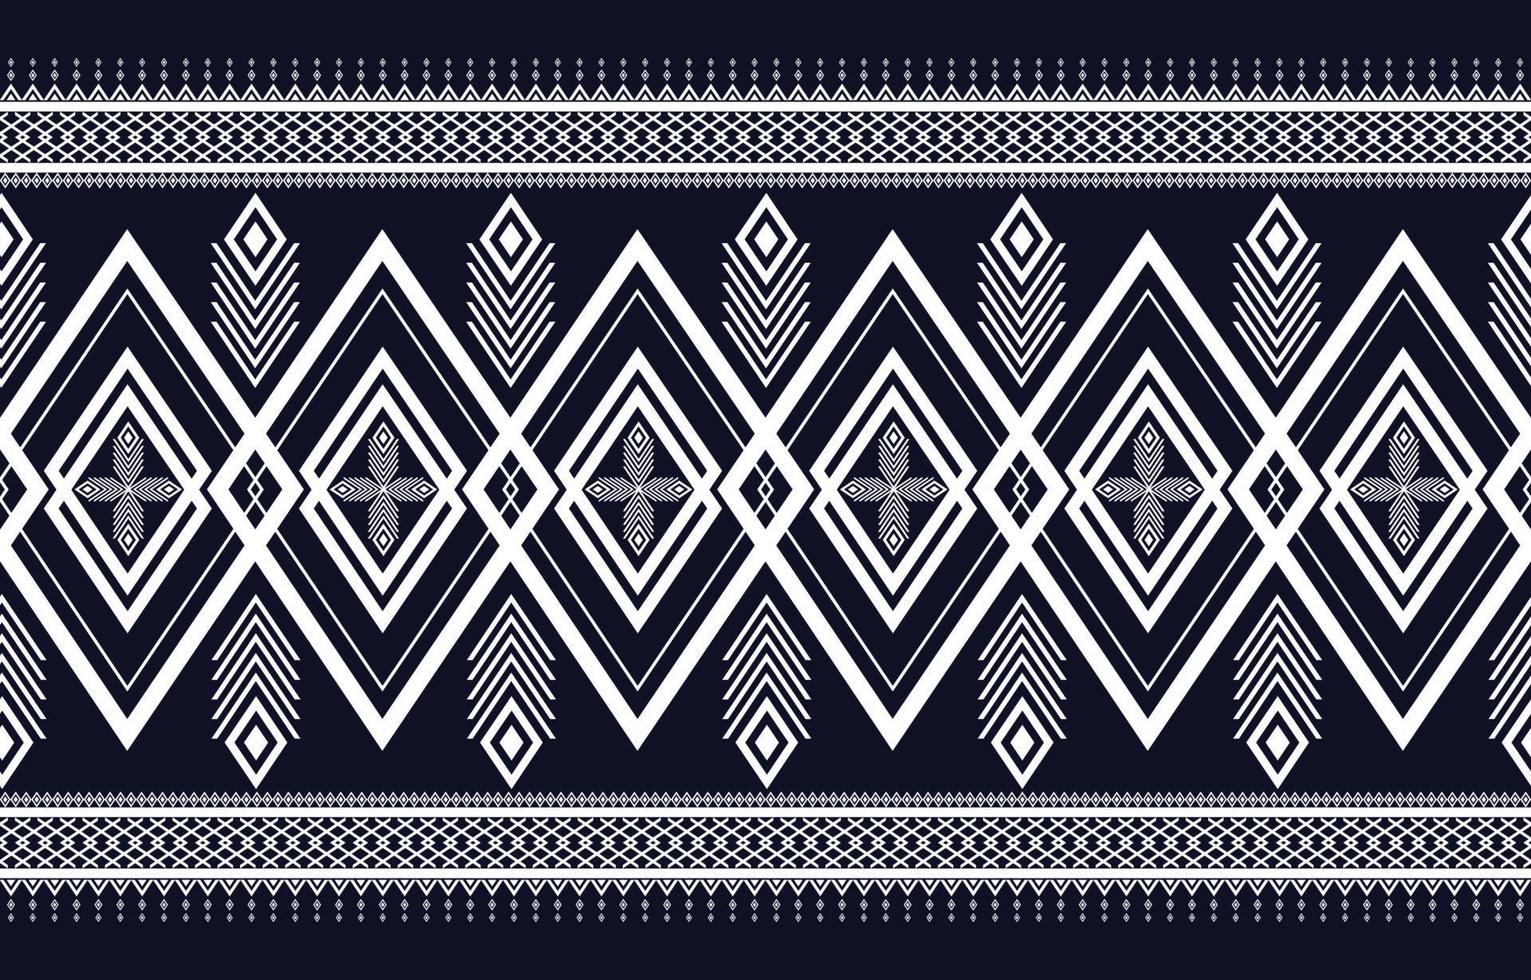 dessins abstraits de motifs géométriques ethniques pour les arrière-plans ou les papiers peints, tapis, batik, motifs natifs de textiles traditionnels. illustration vectorielle vecteur